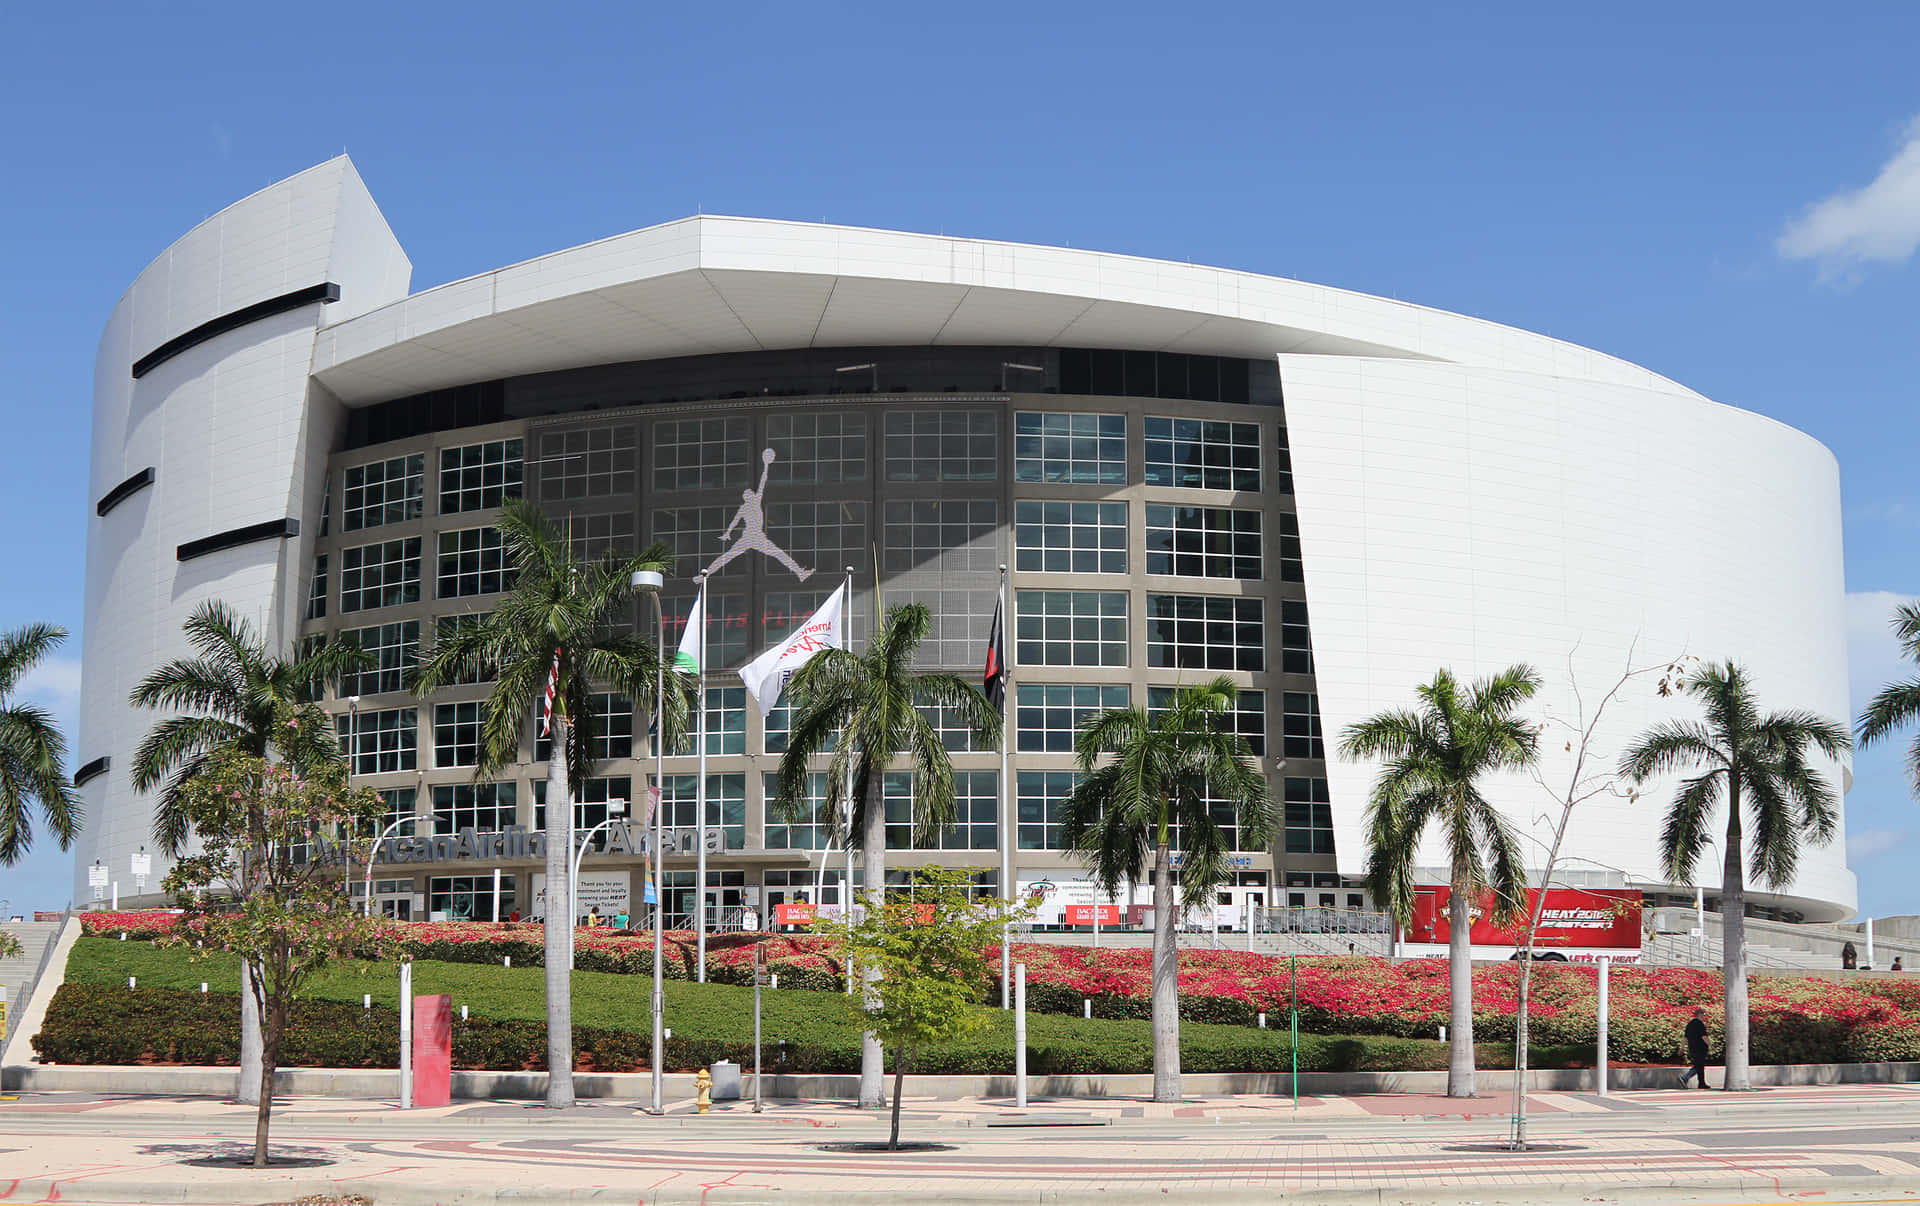 Miamiheat Arena